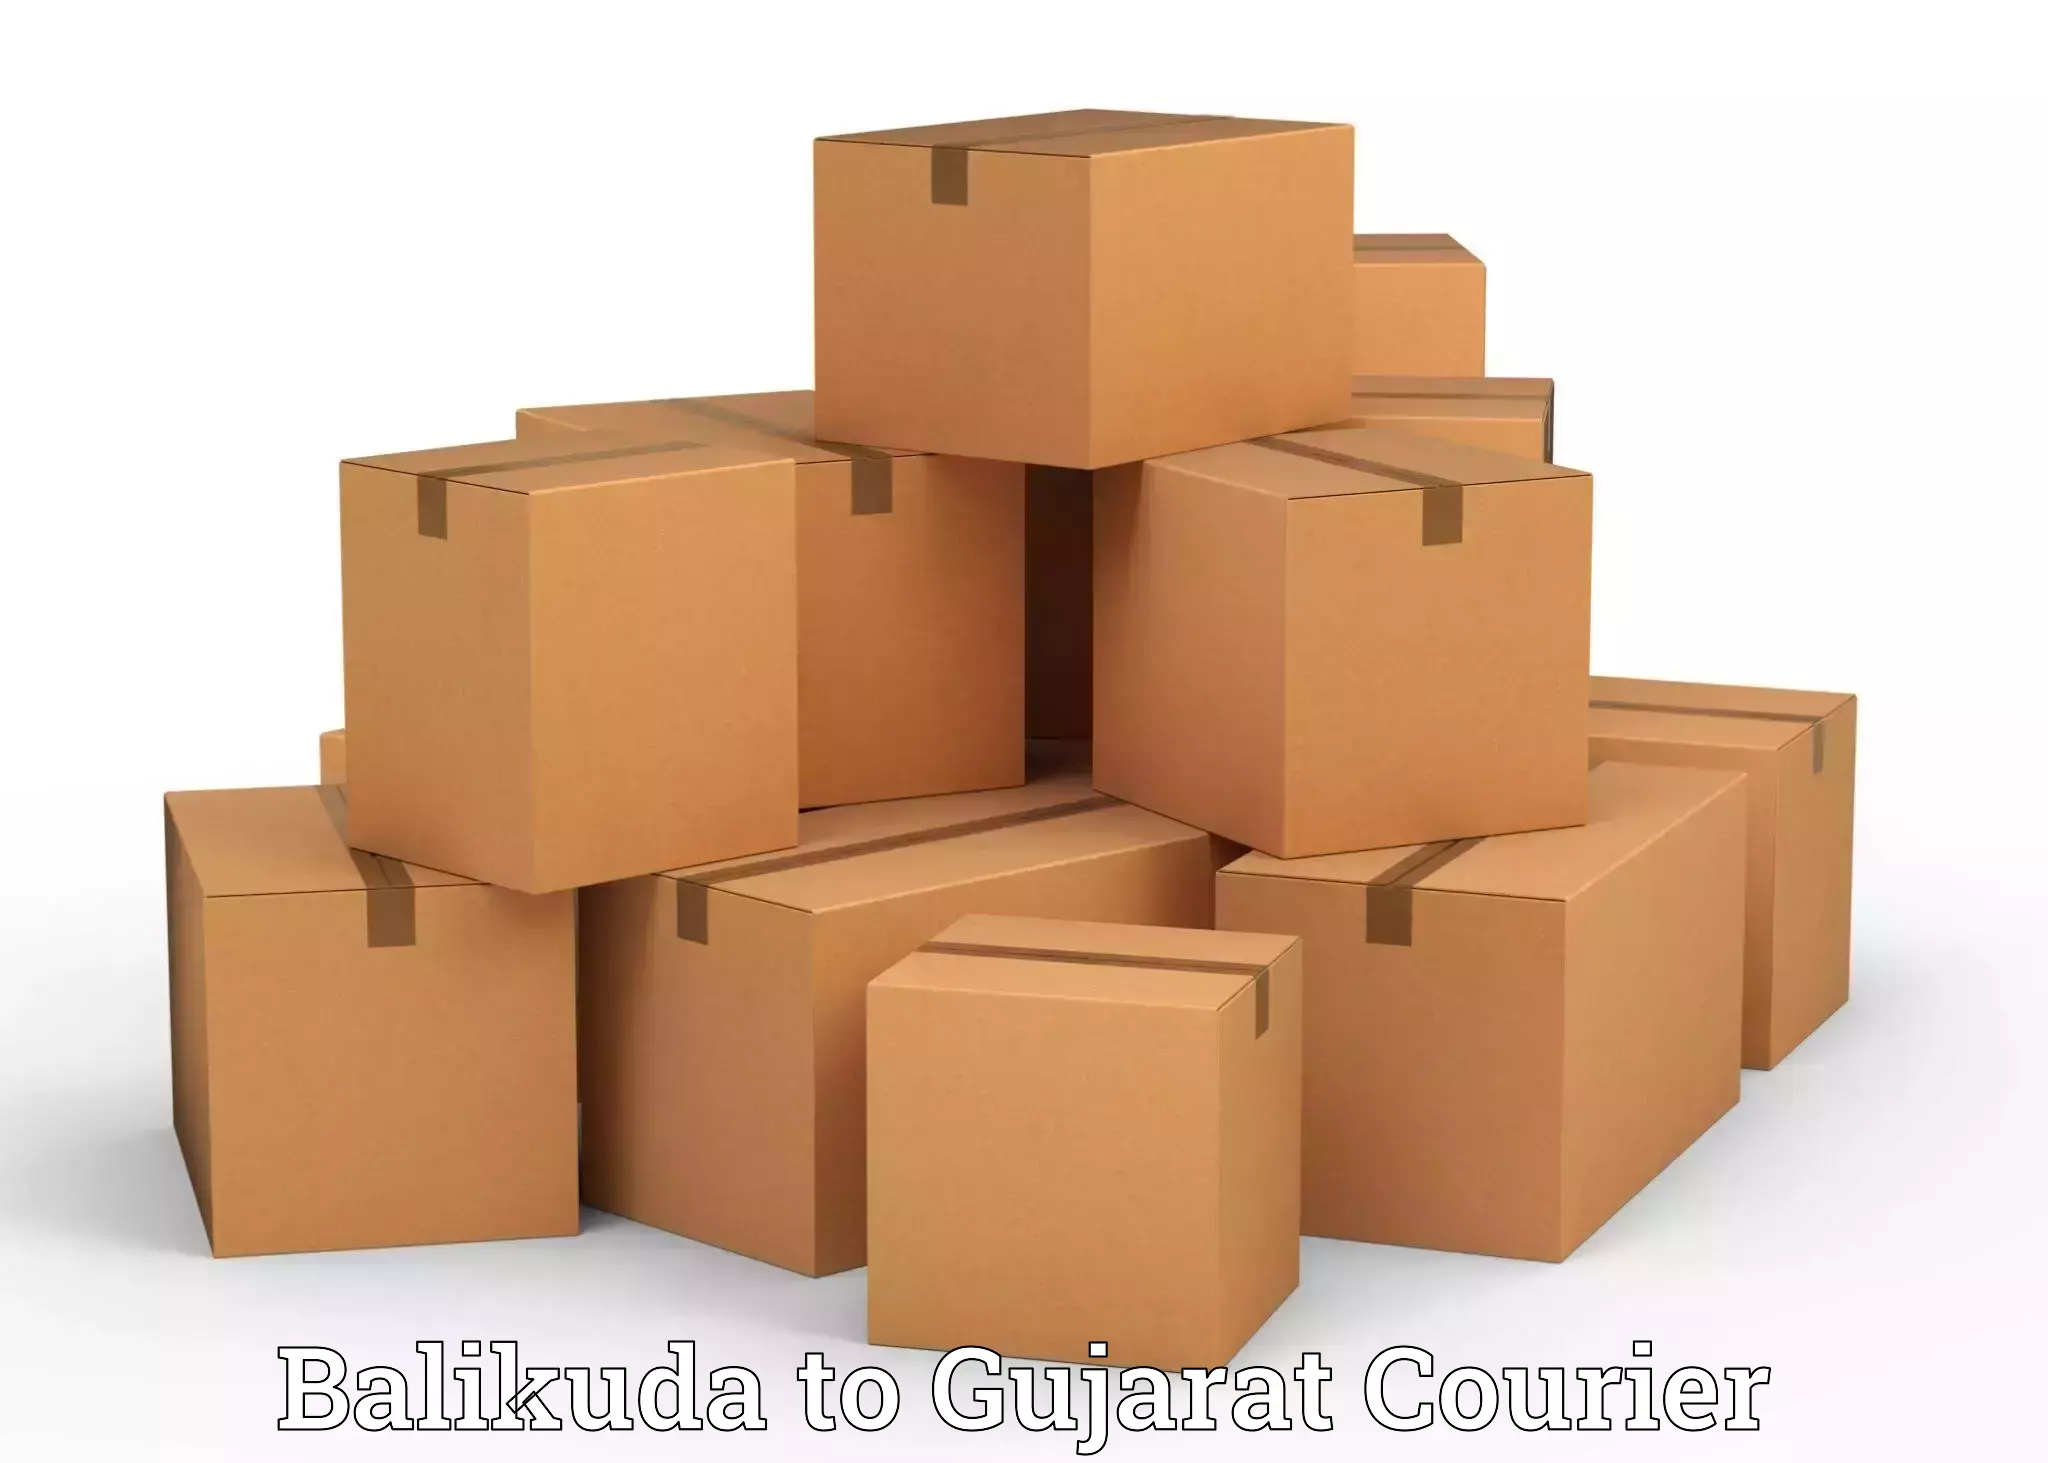 Comprehensive moving assistance Balikuda to Katodara